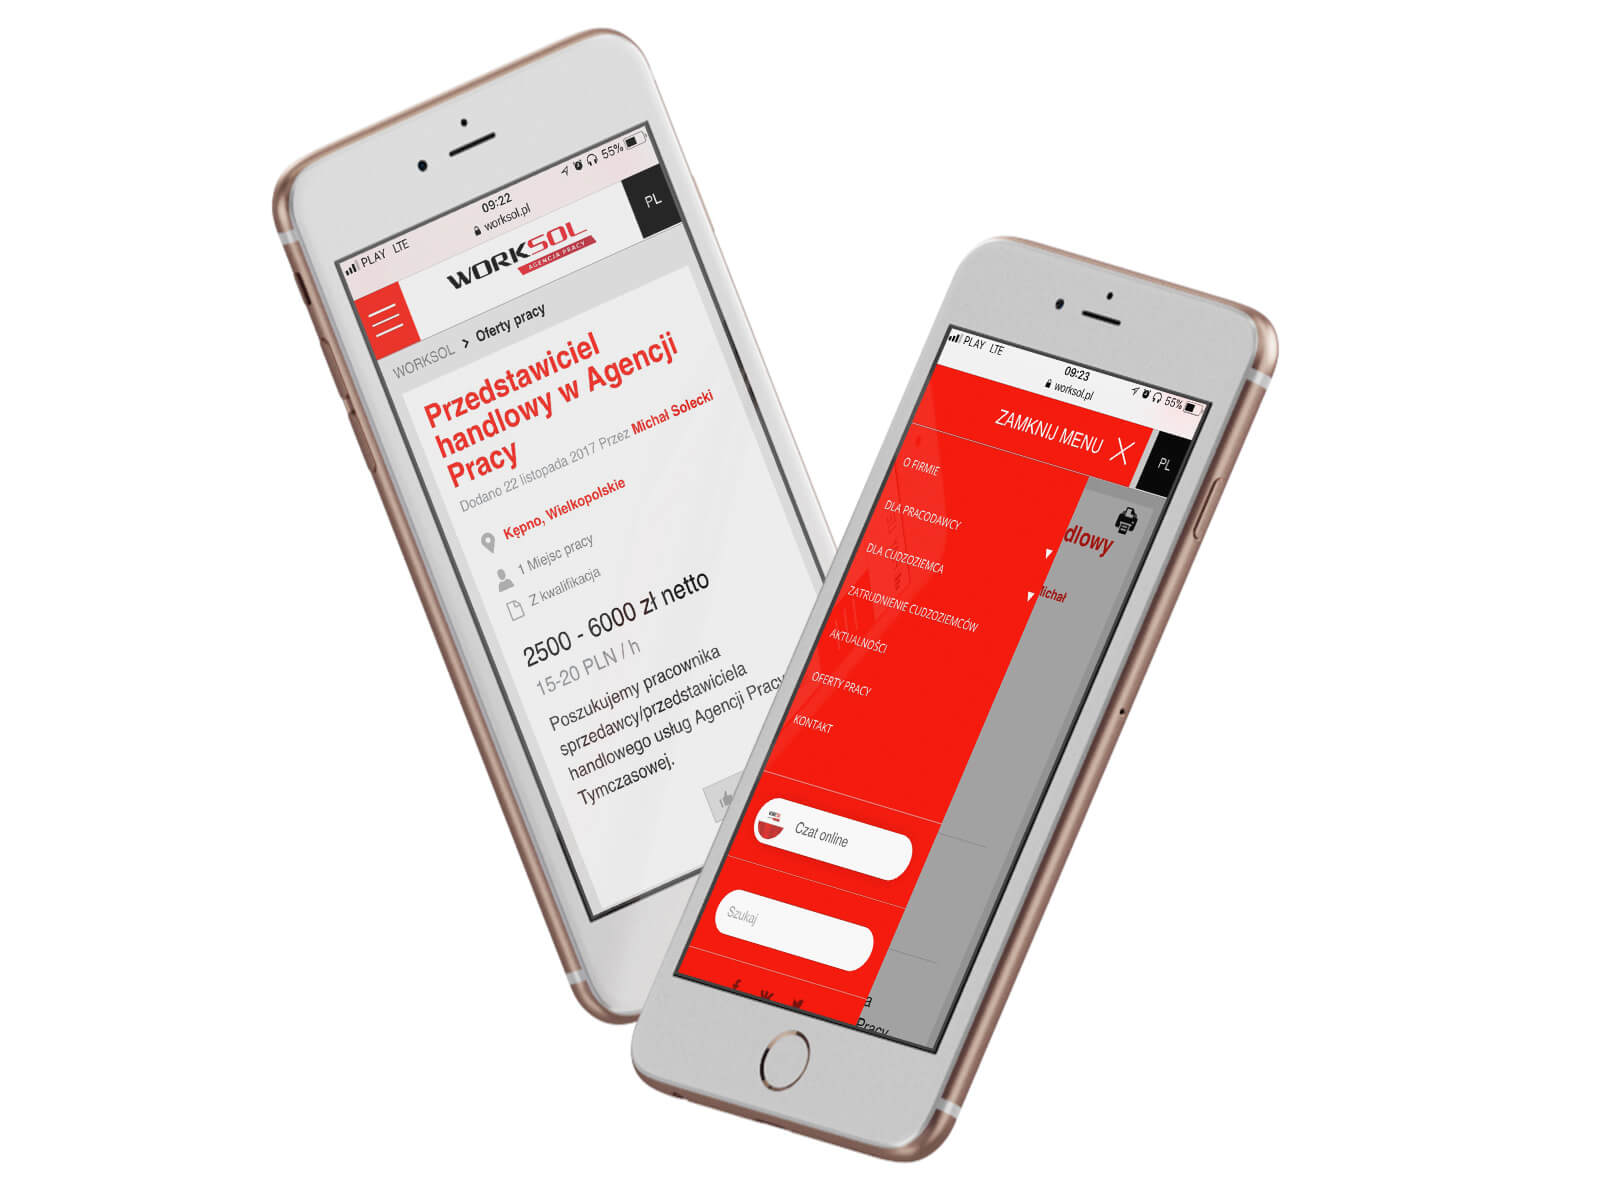 Worksol - serwis internetowy informacyjny z ofertami pracy - projekt na smartphonach